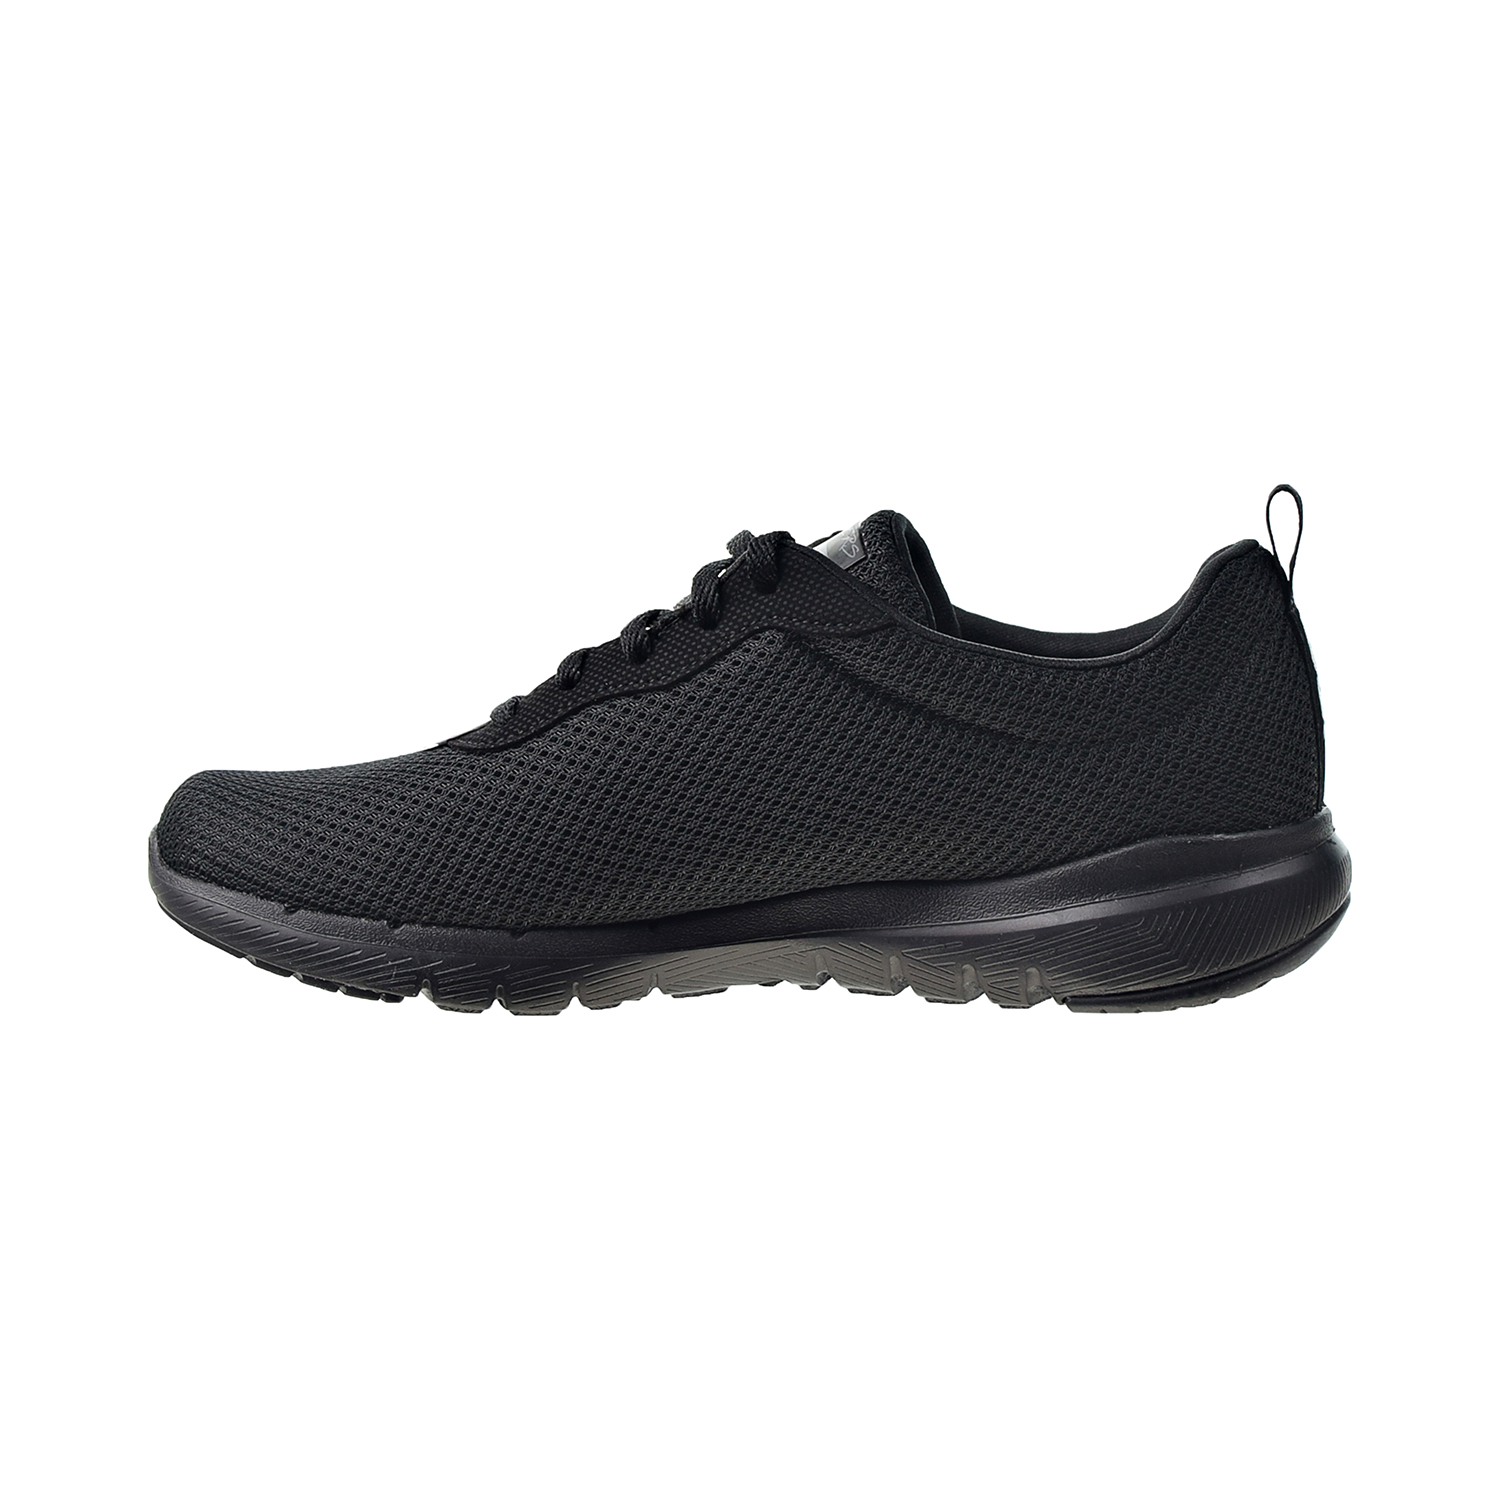 Skechers Flex Appeal 3.0 First Insight Women's Shoes Black 13070-BBK | eBay